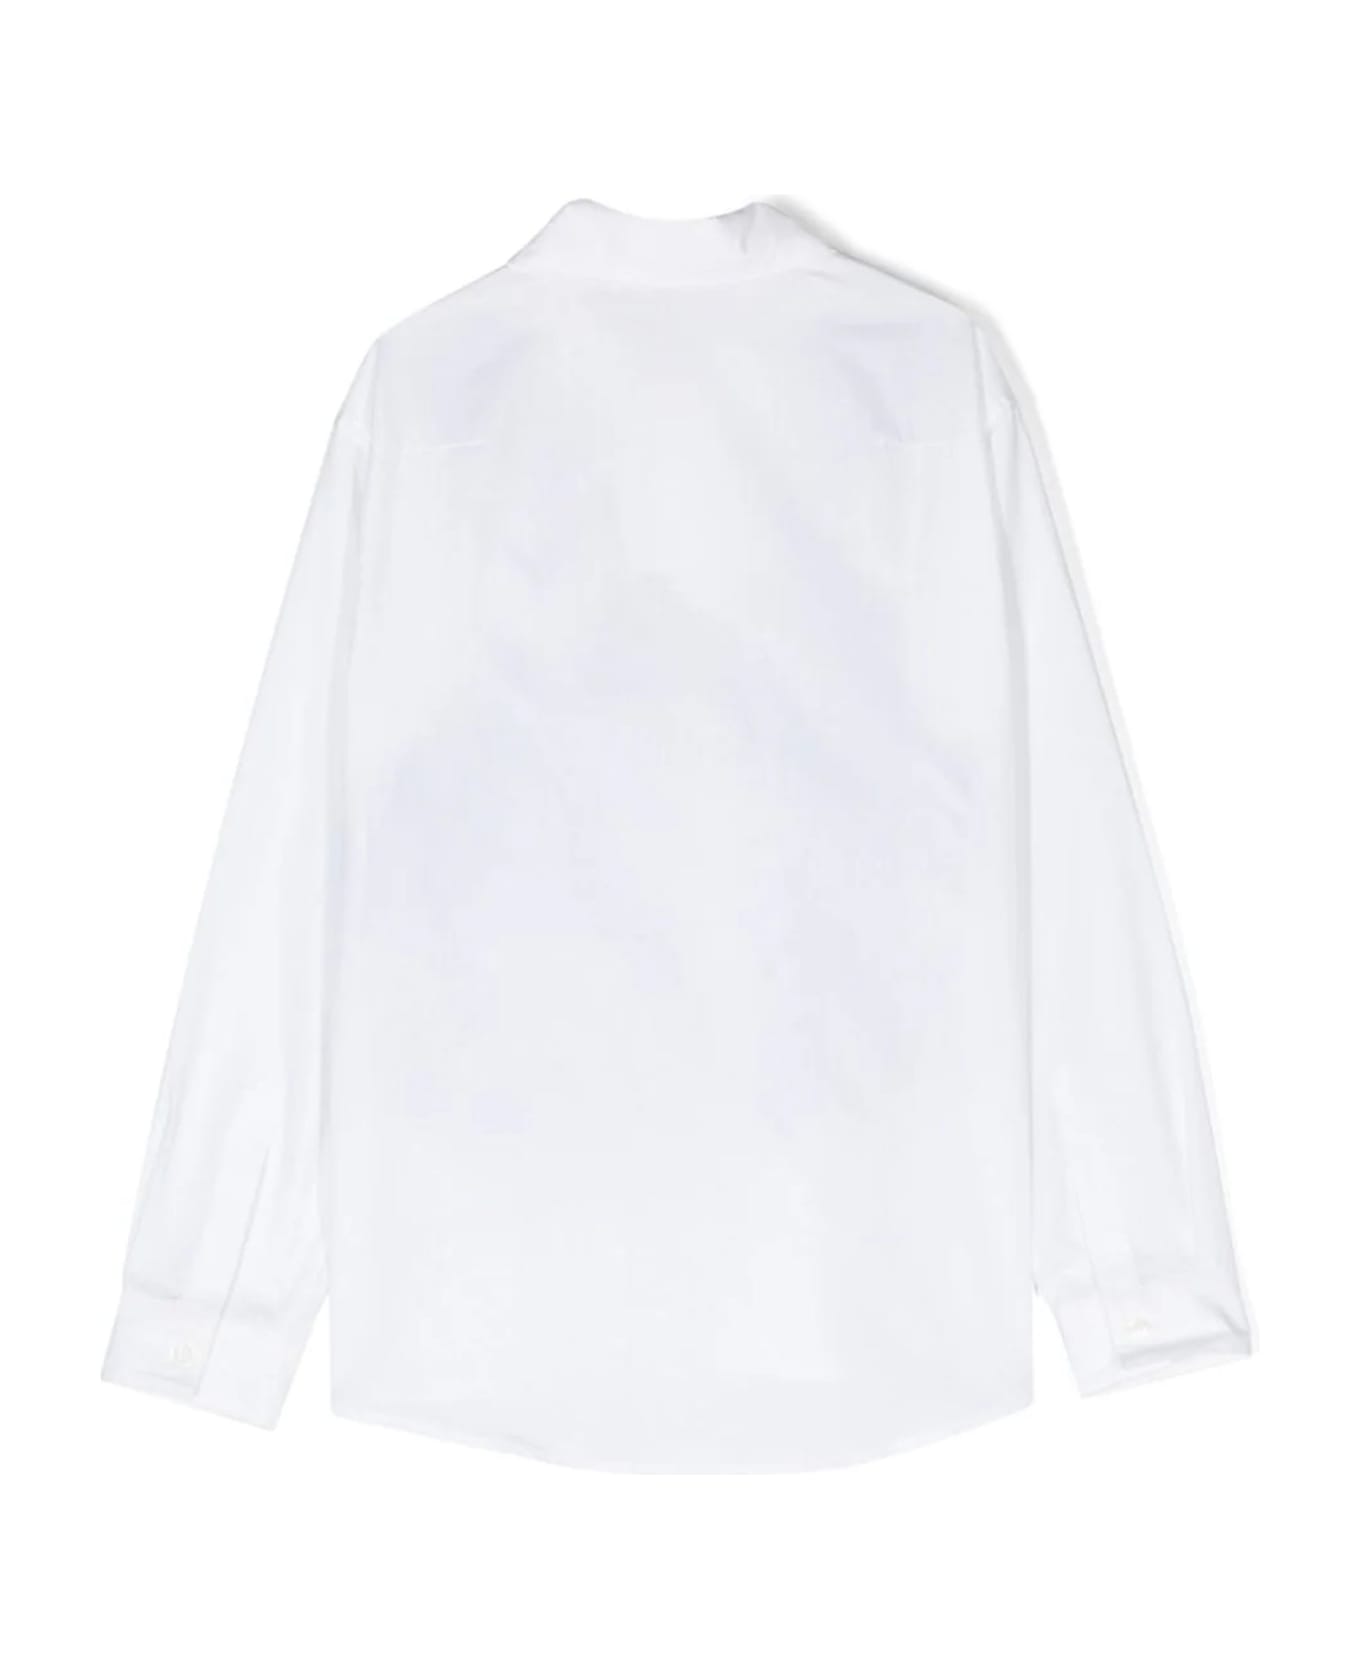 Missoni Shirts White - White